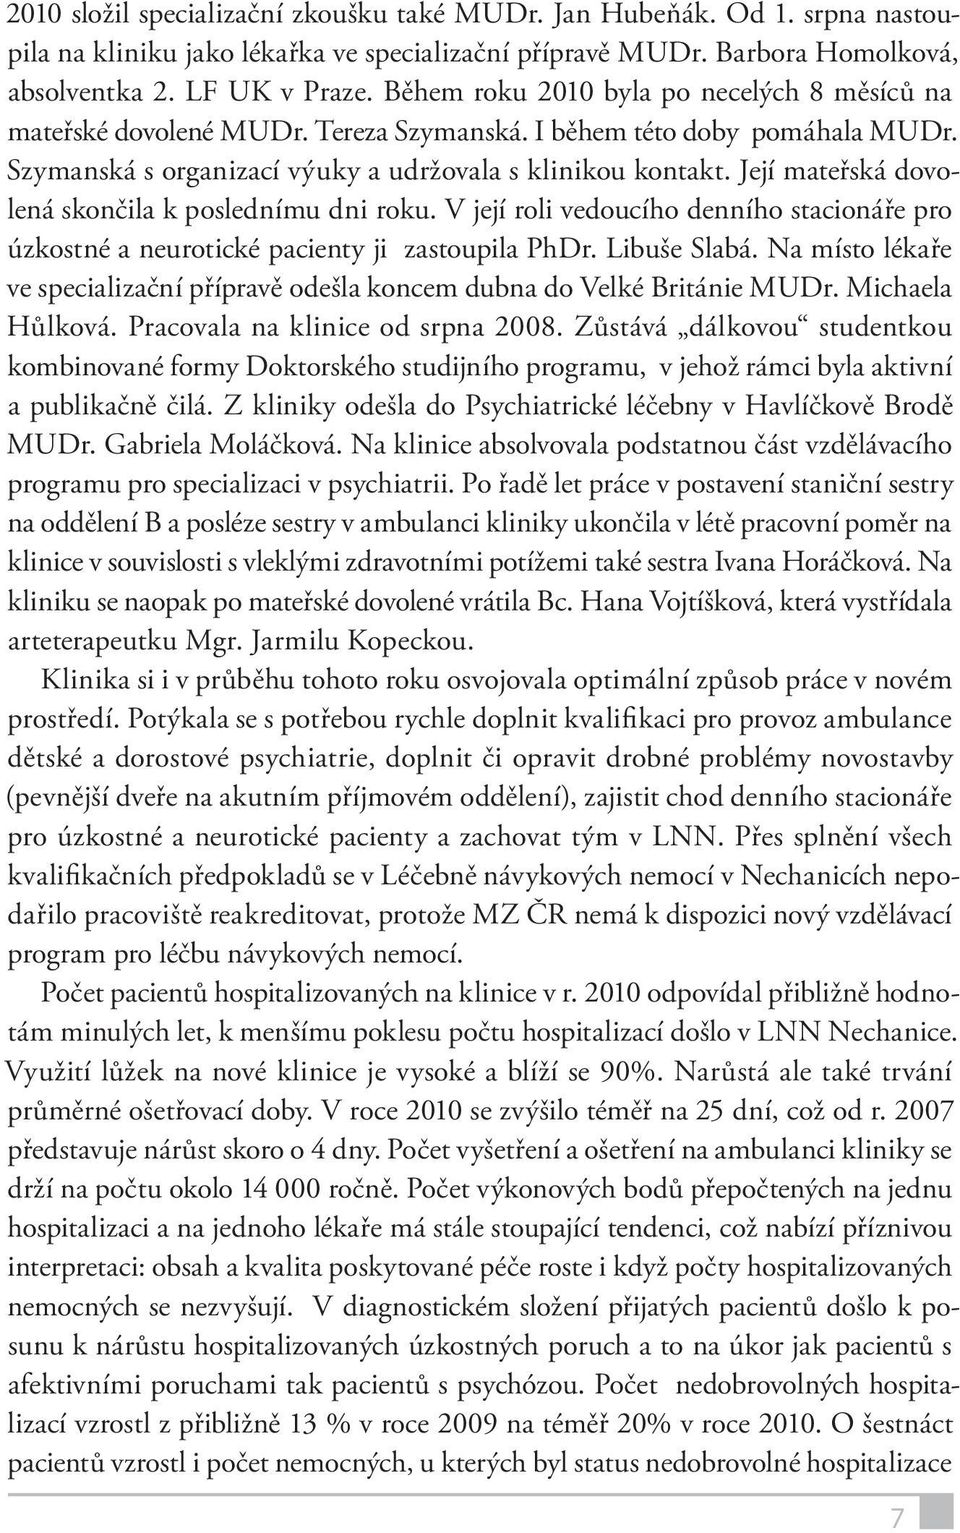 VÝROČNÍ ZPRÁVA. Psychiatrické kliniky Hradec Králové za rok 2010 * - PDF  Free Download